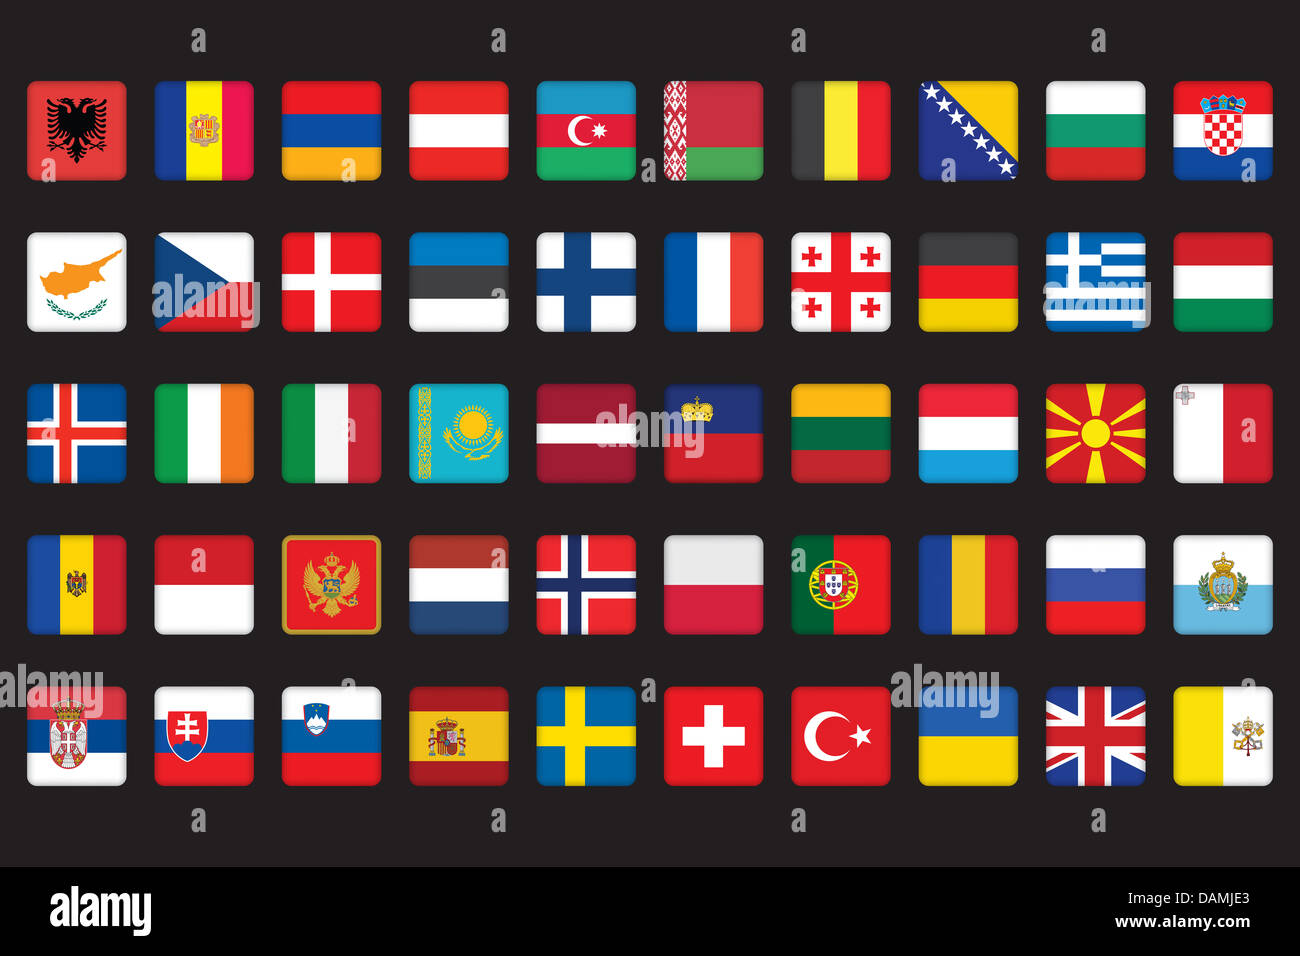 Флаг какой страны в форме квадрата. Флаги Европы. Флаги европейских государств. Национальные флаги Европы. Флаги европейских стран.